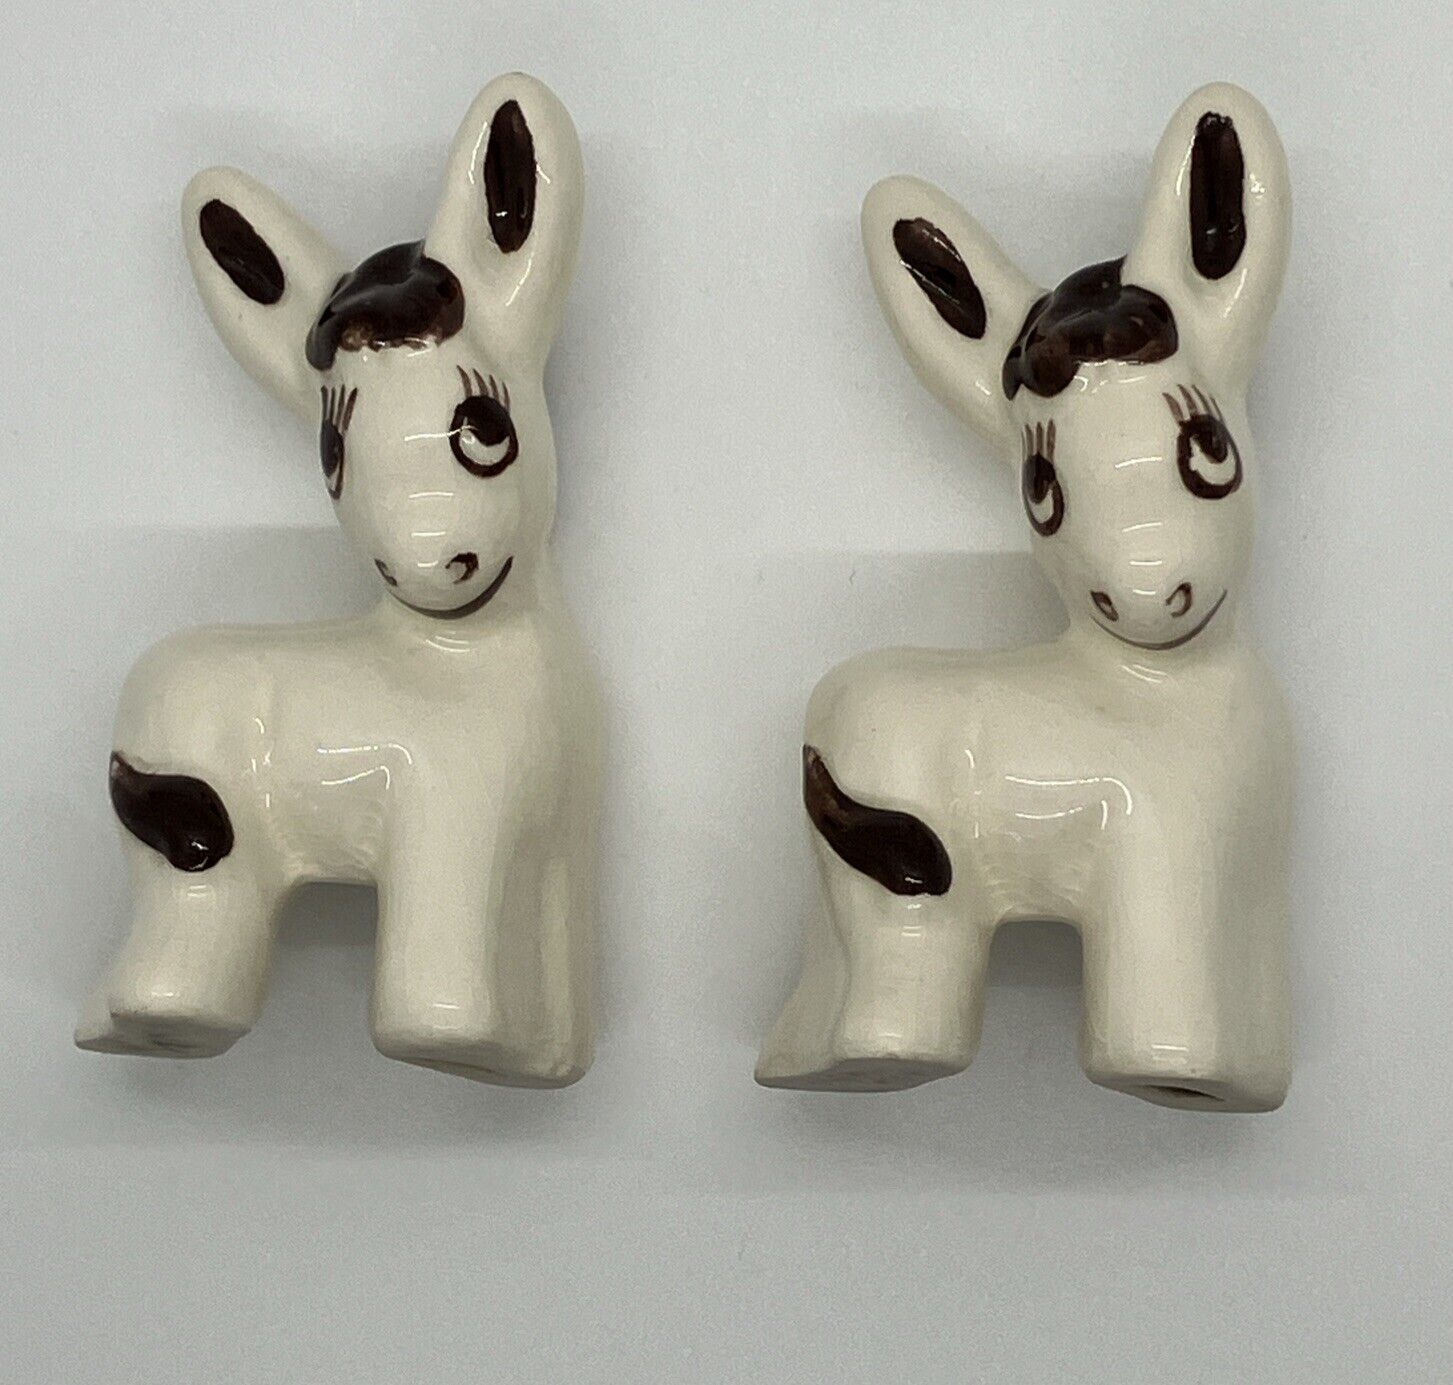 Vintage 3” Donkey Ceramic Kitsch Pottery Mule Figurines Lot Set Of 2 Japan? USA?